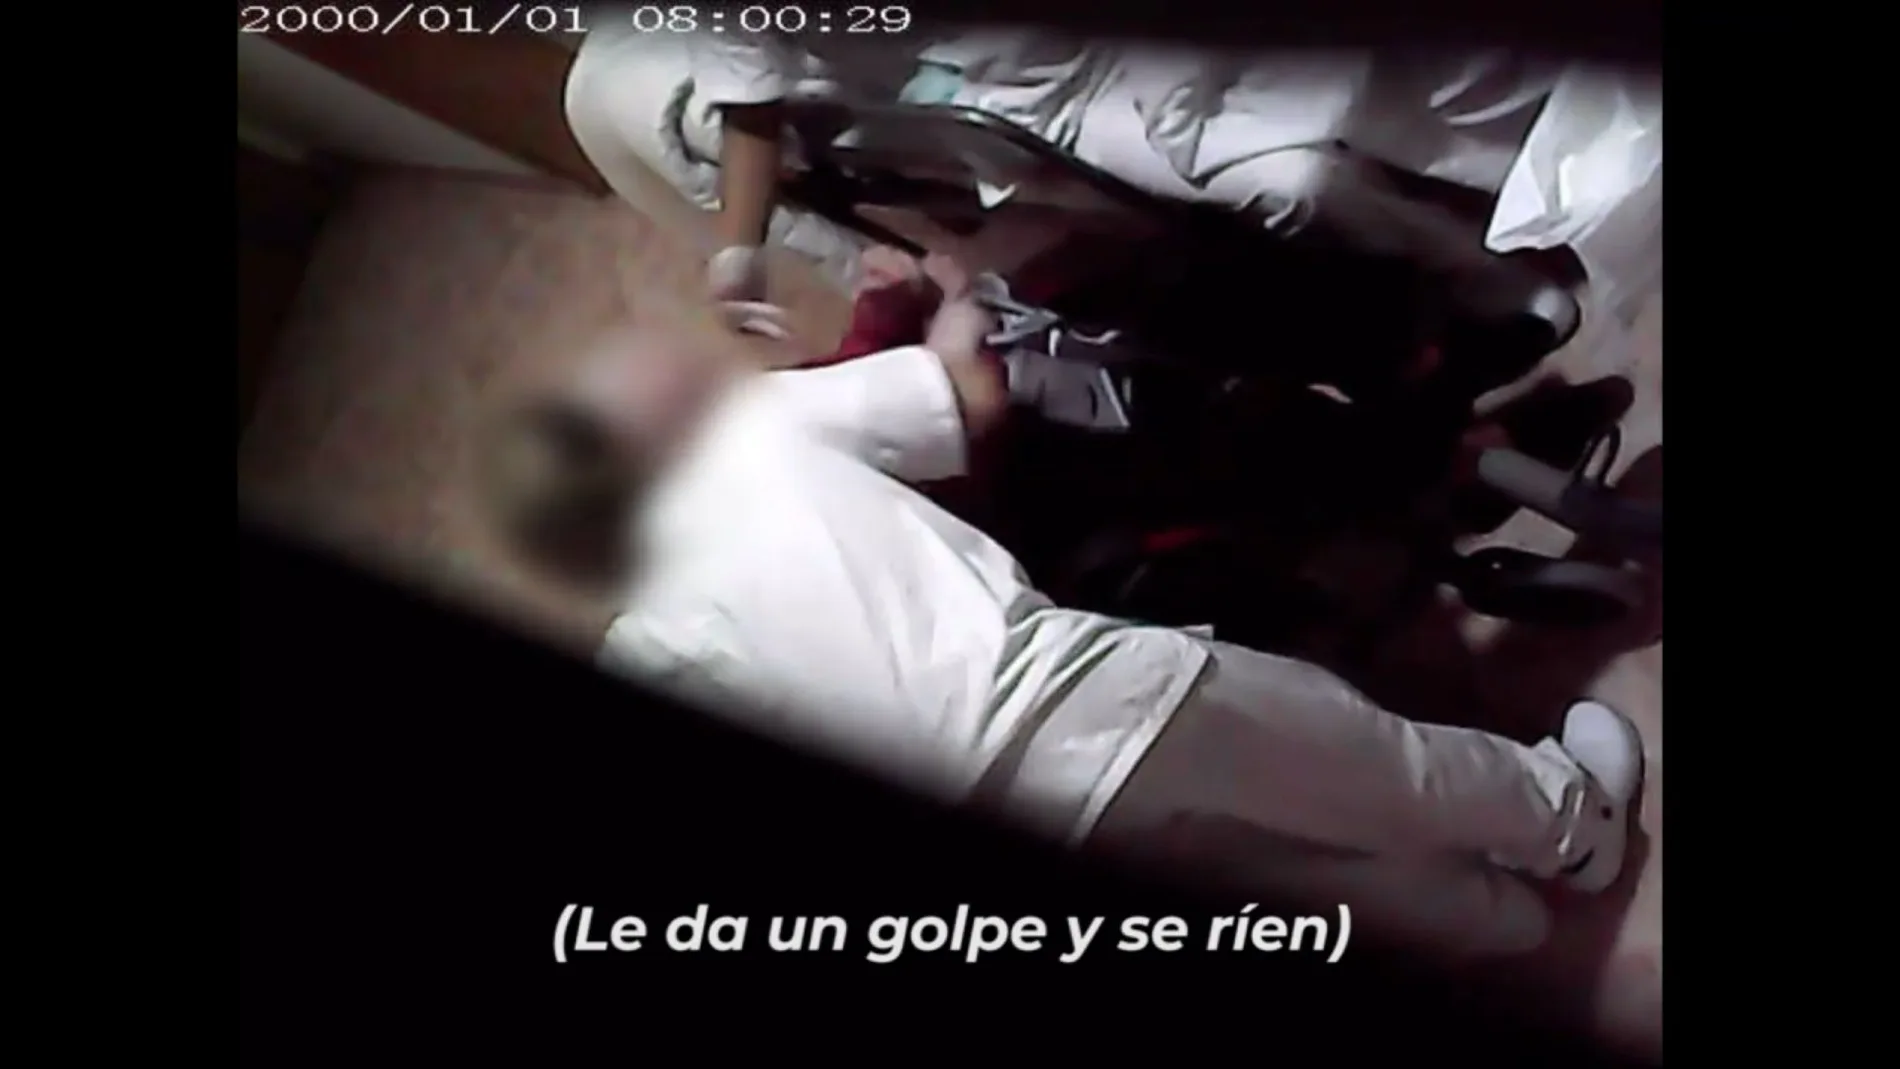 Fotograma del vídeo grabado por un familiar de un residente que sospechaba de las malas prácticas del centro